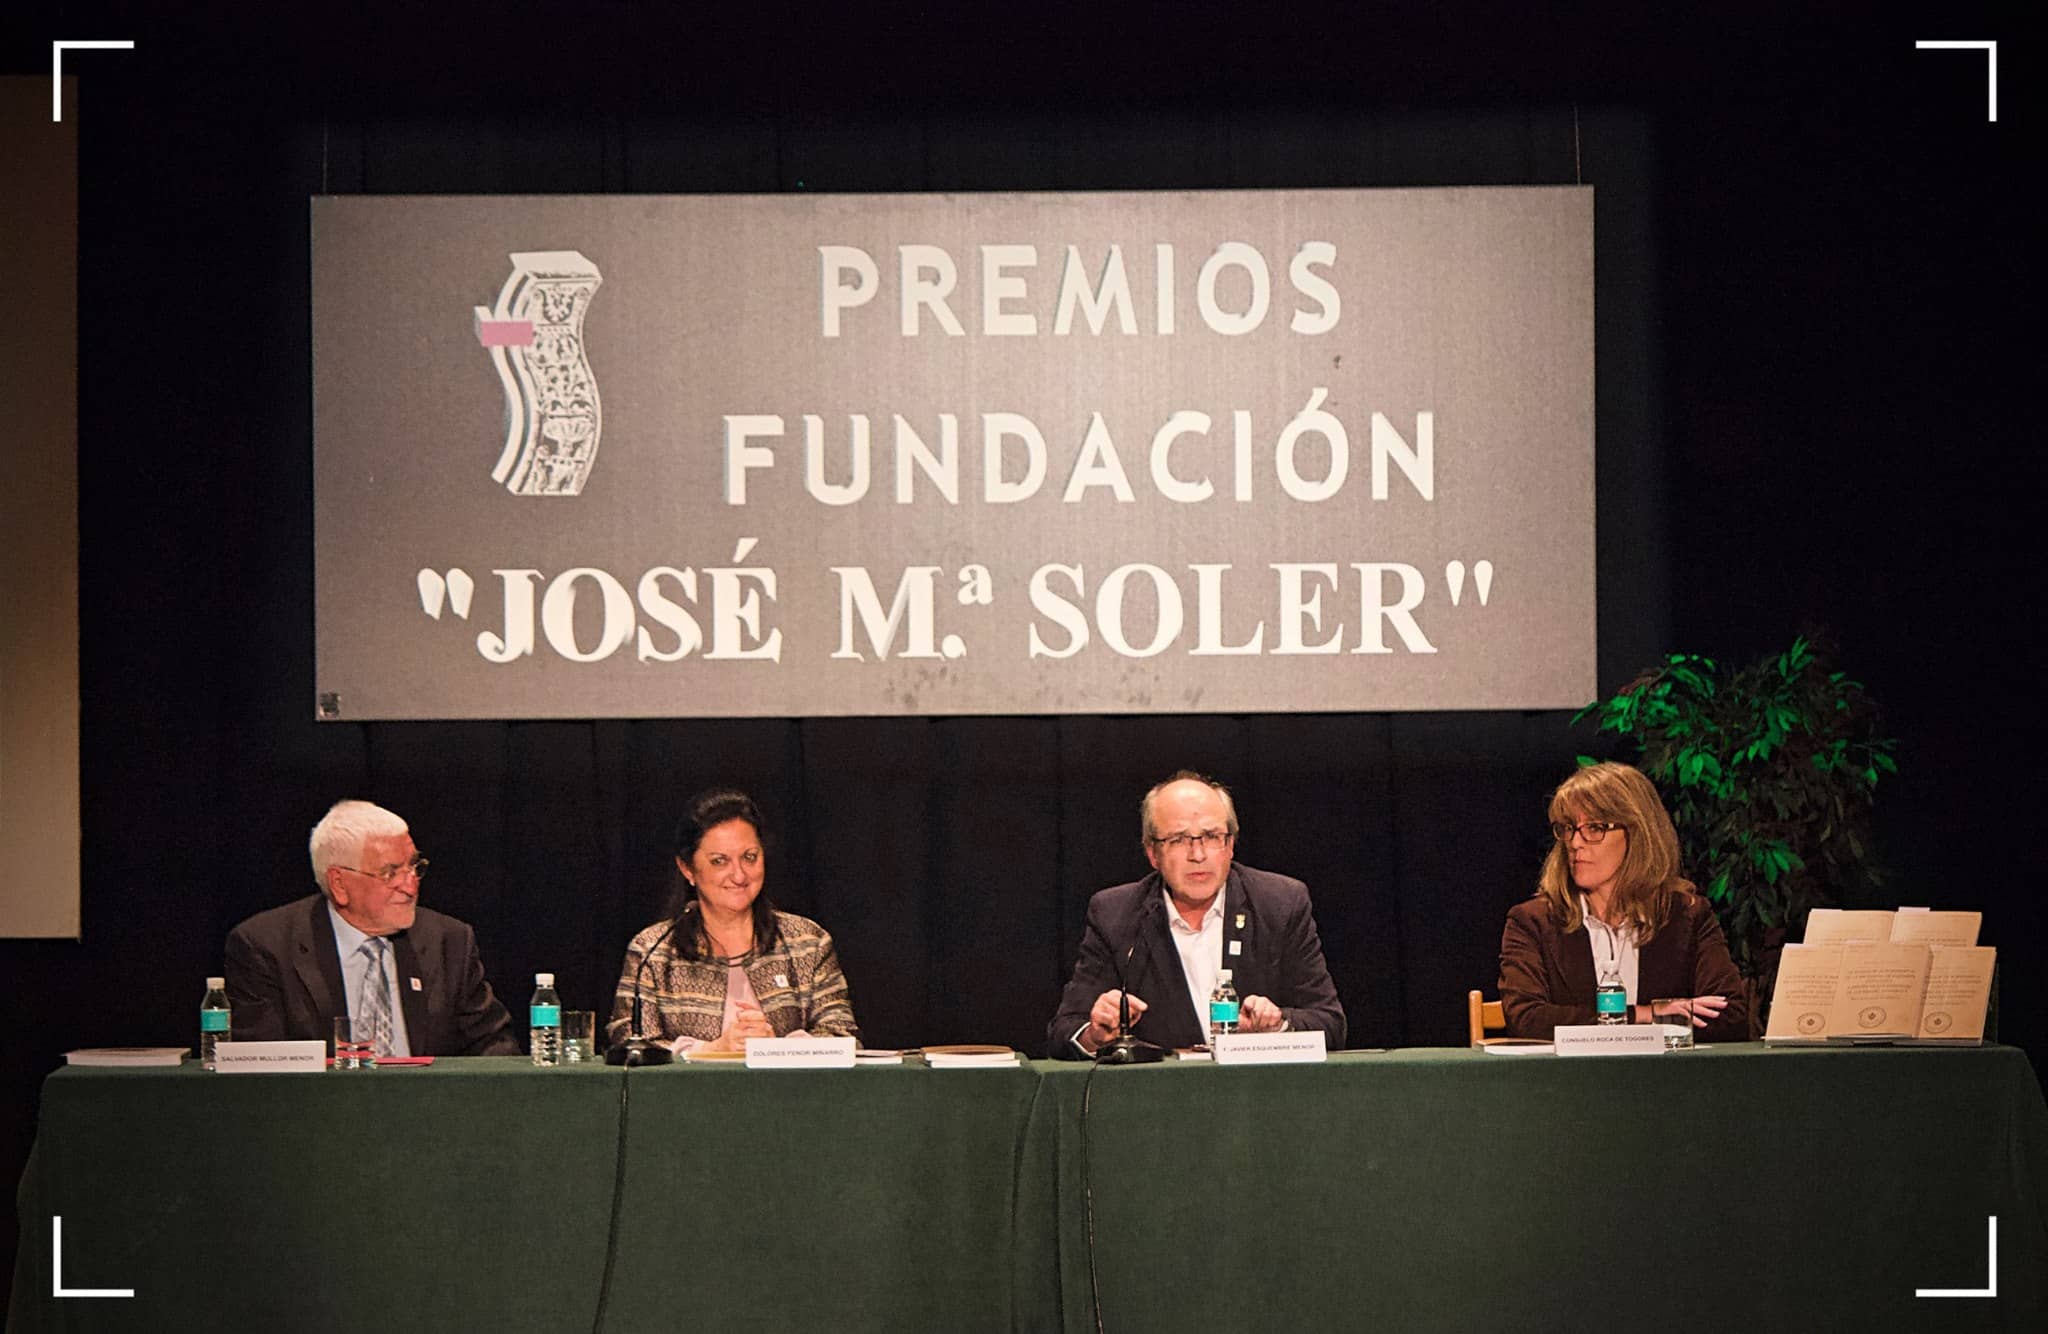 La Fundación Municipal “José María Soler” informa que el próximo 21 de mayo finaliza el plazo de presentación de los Premios de Investigación e Iniciación a la Investigación José María Soler en sus distintas modalidades.